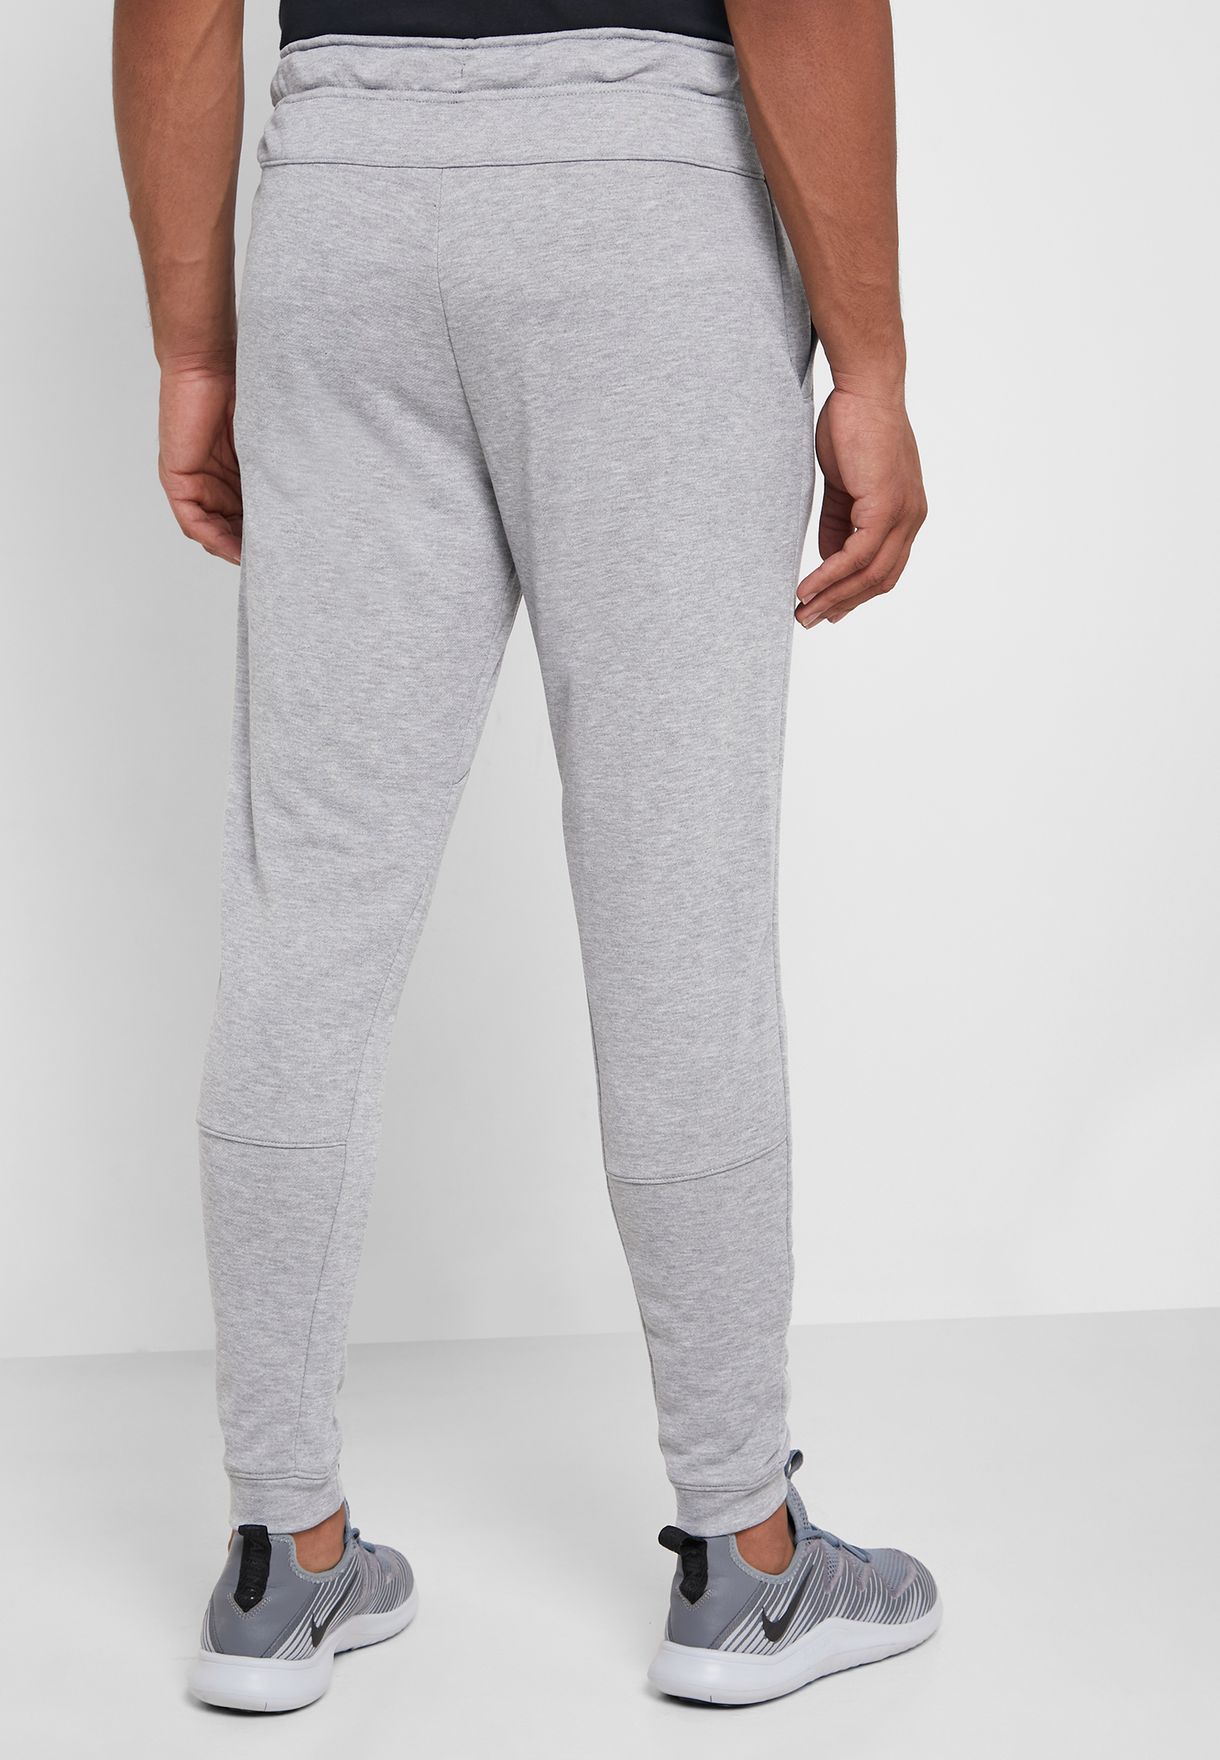 Buy Nike grey Dri-FIT Taper Fleece 